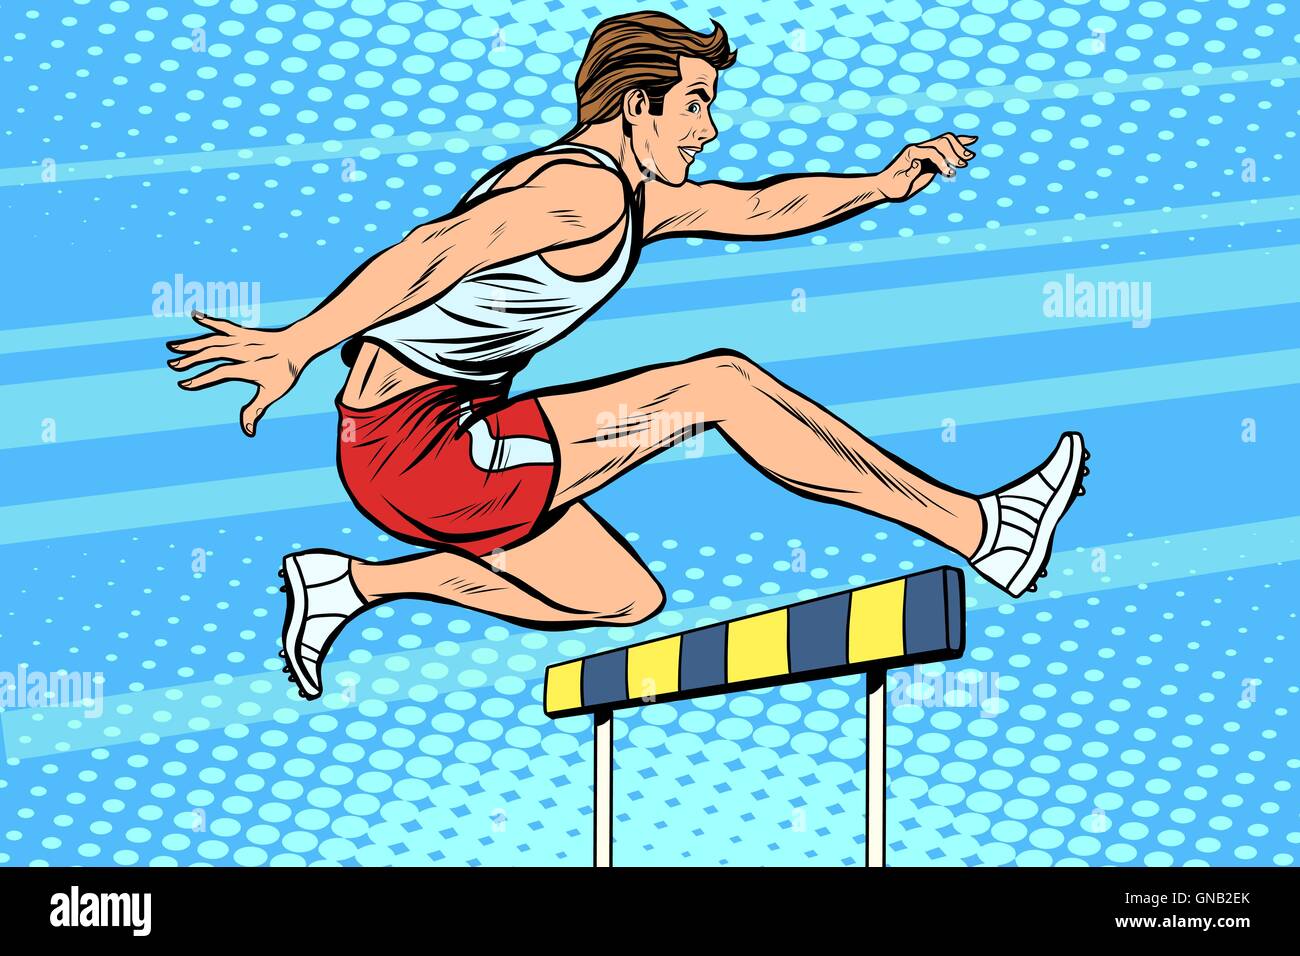 Man running hurdles athletics Stock Vector